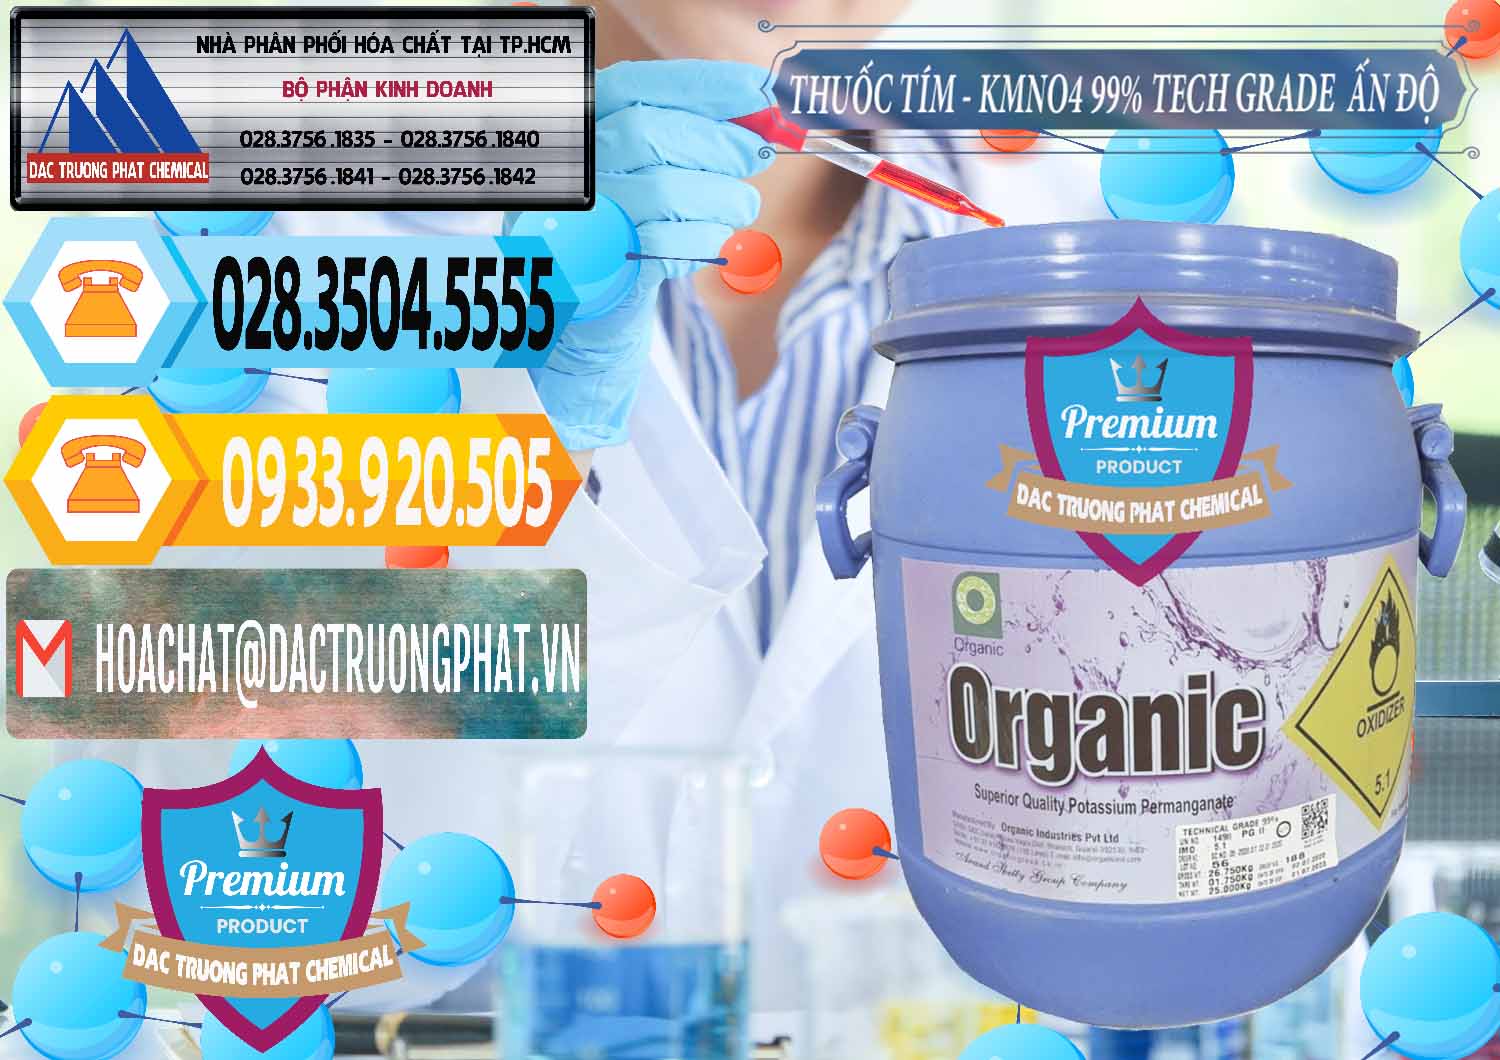 Nhà nhập khẩu - bán Thuốc Tím - KMNO4 99% Organic Group Ấn Độ India - 0250 - Nơi bán & cung cấp hóa chất tại TP.HCM - hoachattayrua.net